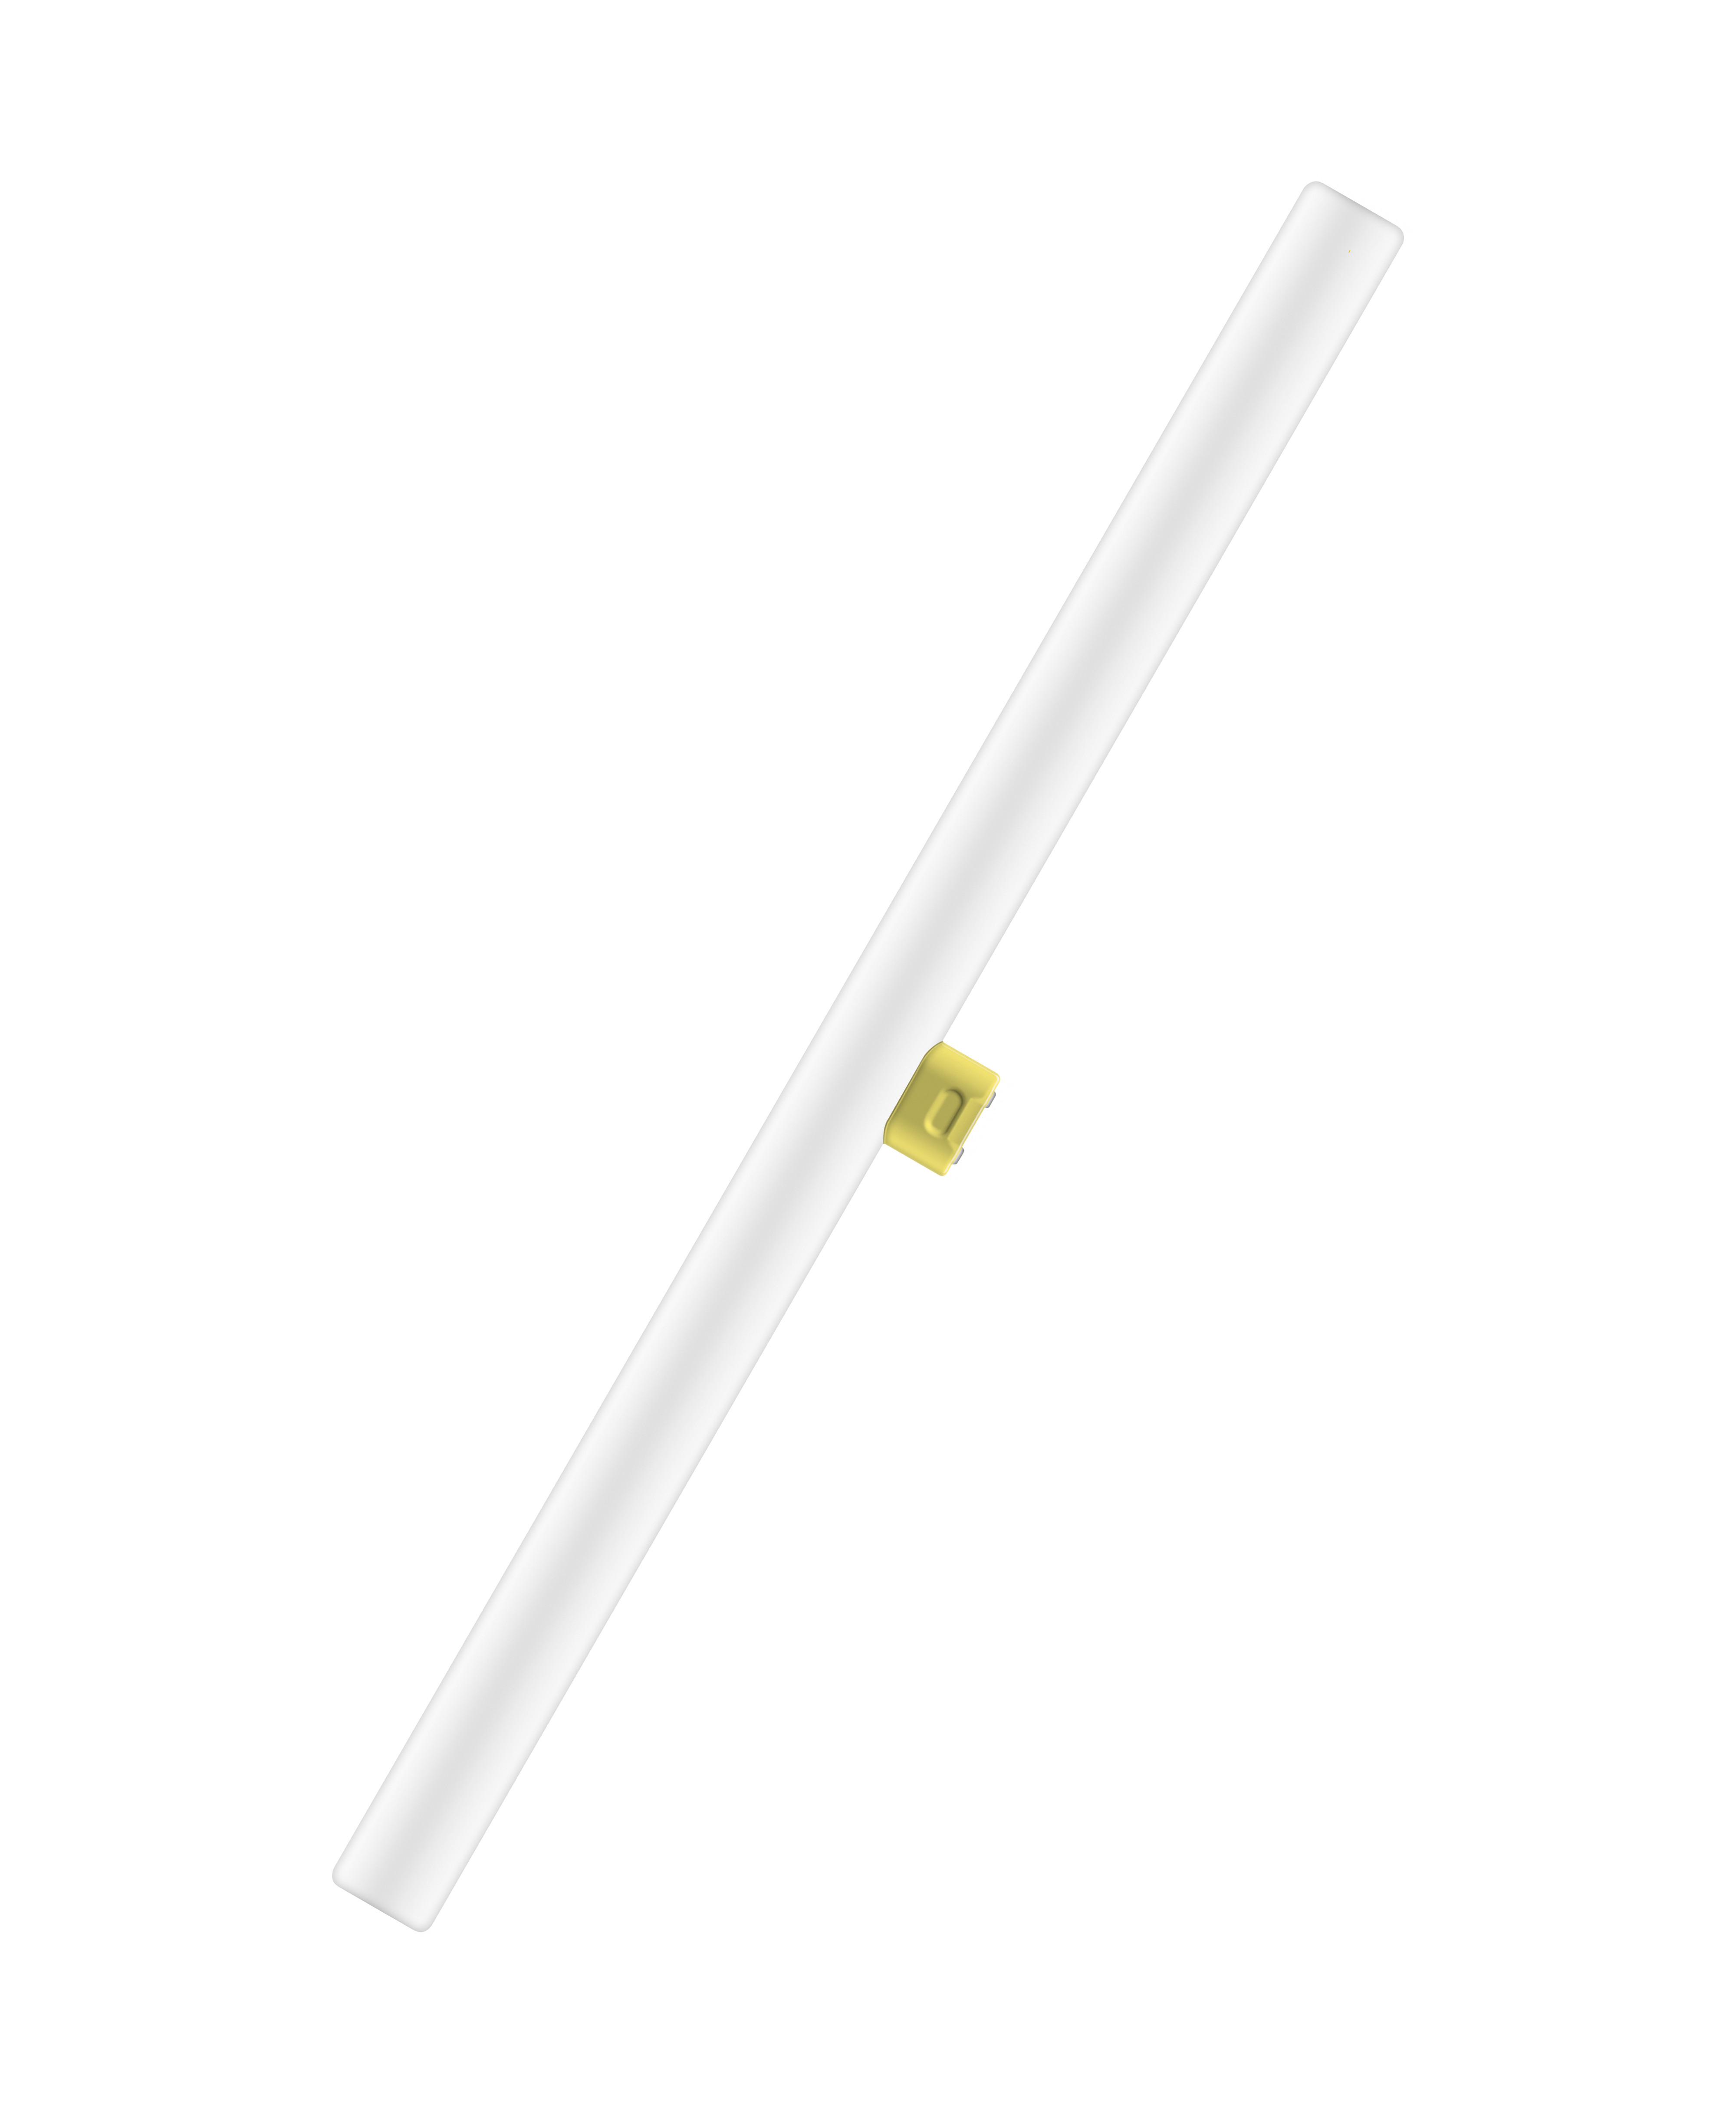 Osram Светодиодная лампа LEDinestra 6W(замена 40 Вт), цоколь S14d, матовая, теплый белый свет